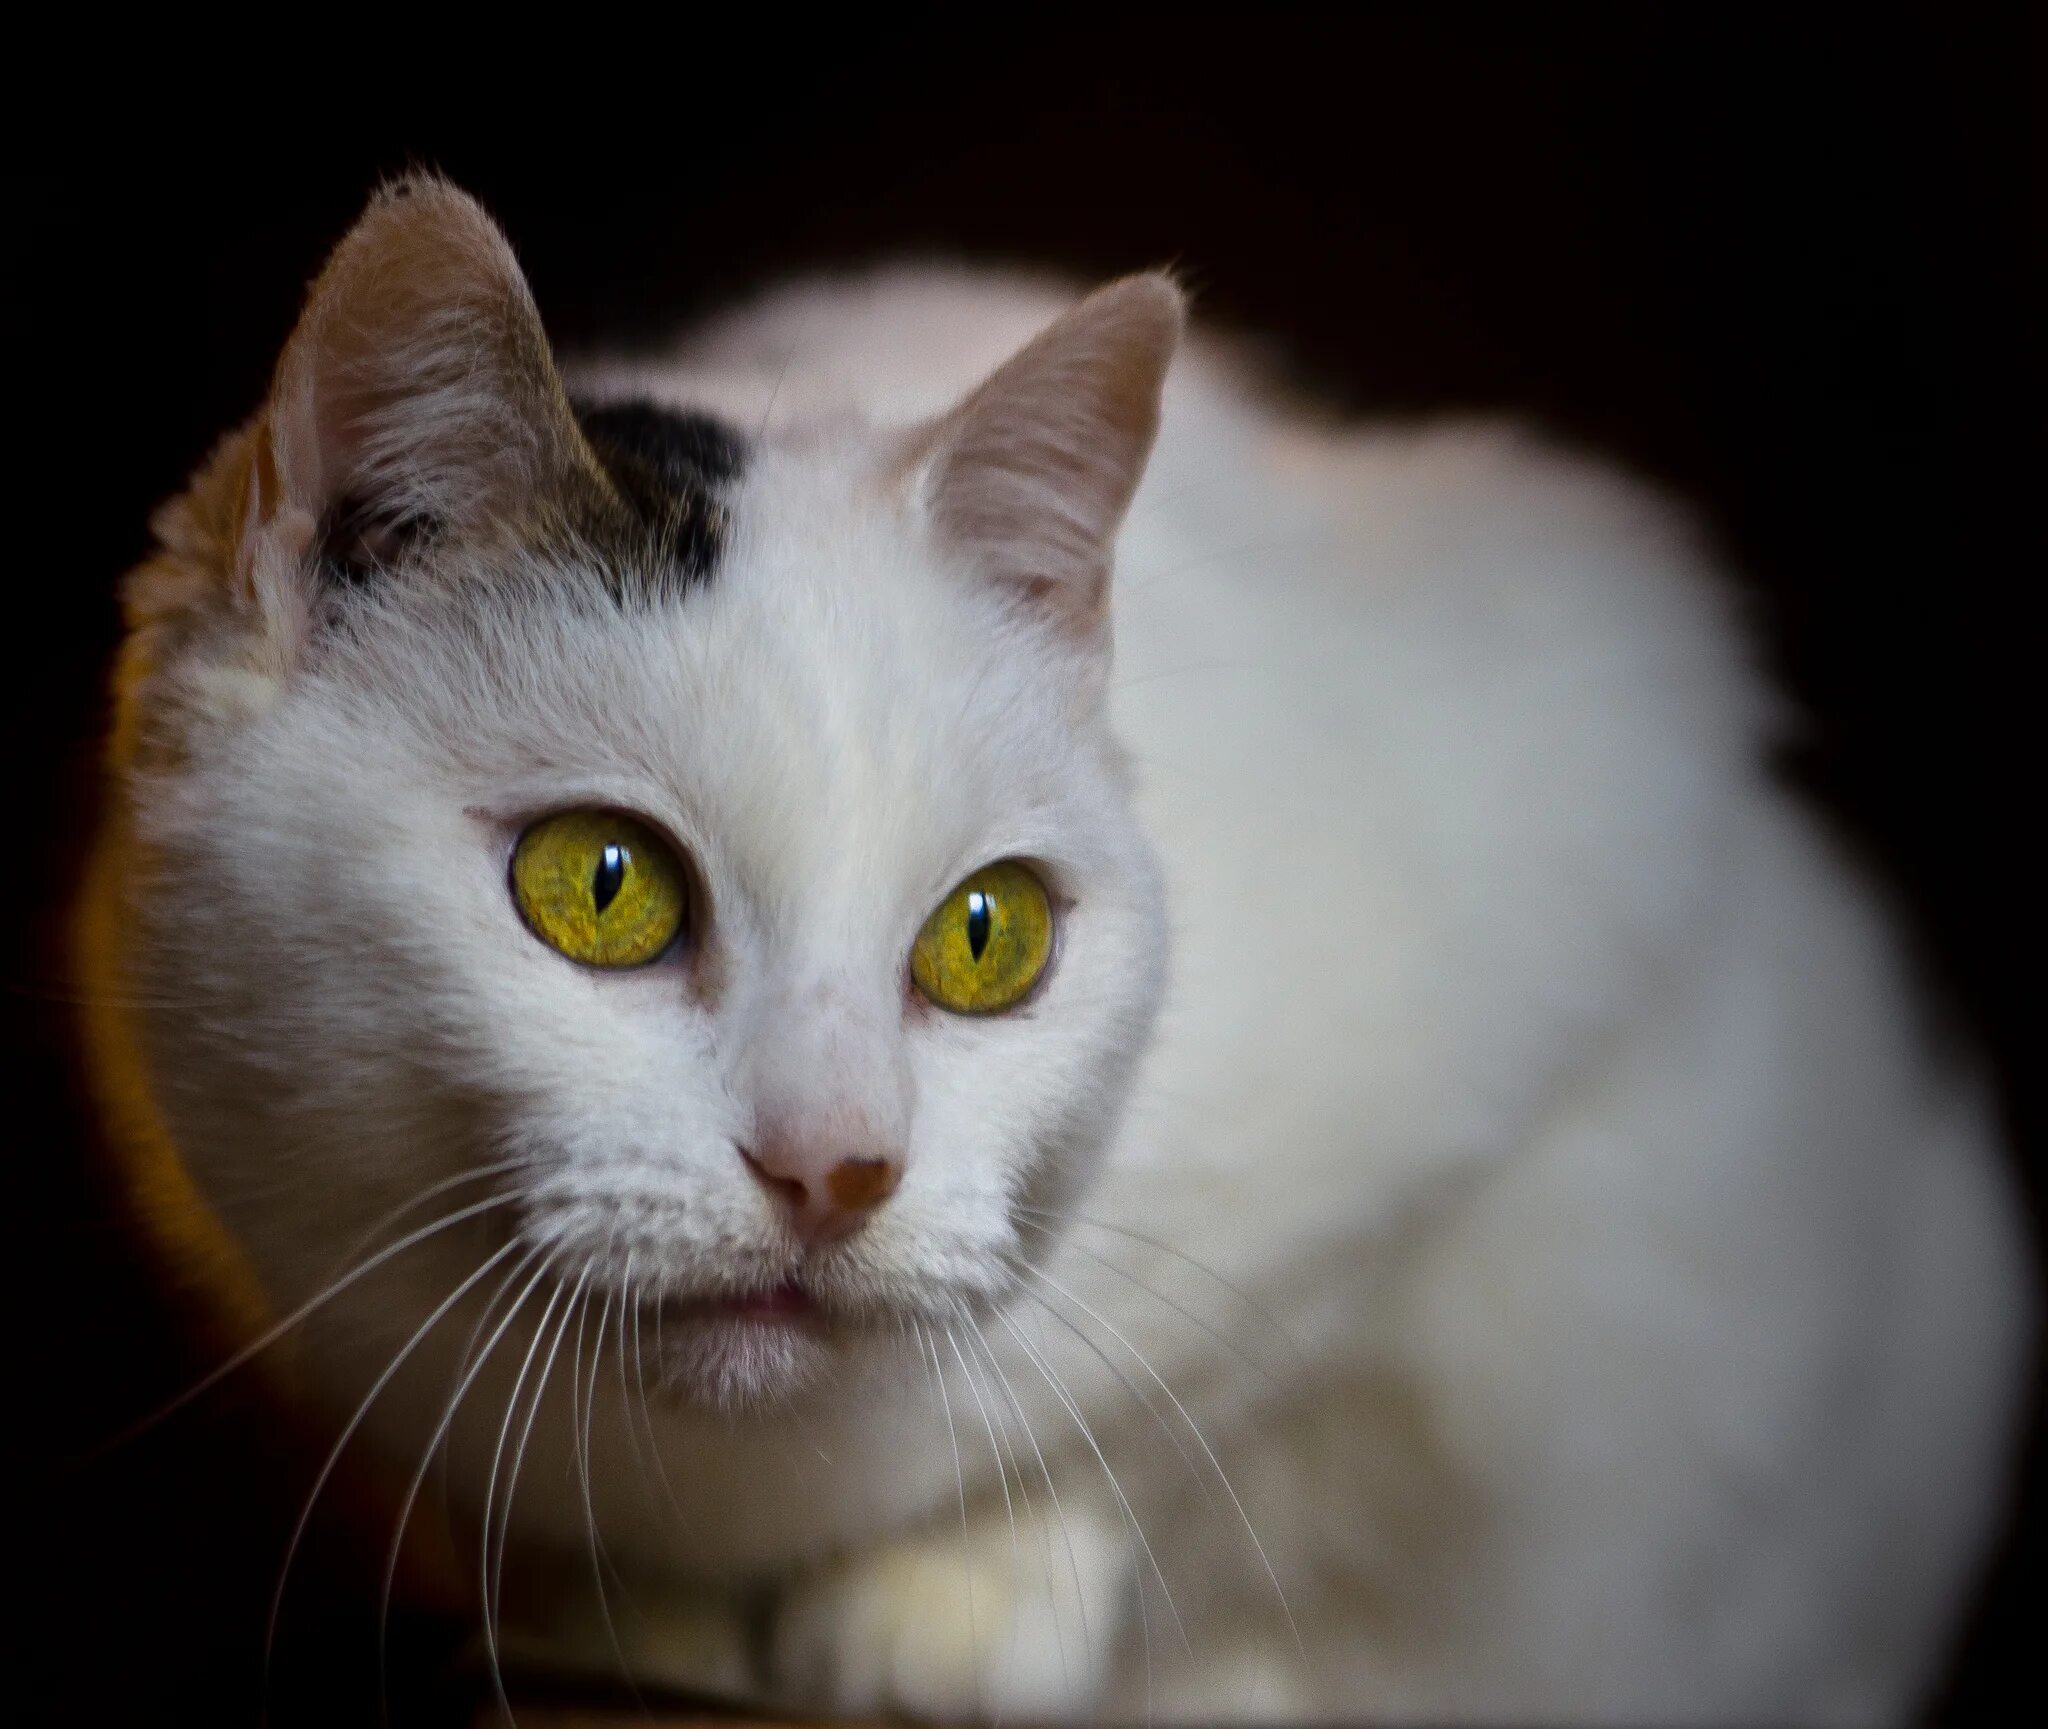 Желтыми как кошачьи глаза какое средство. Белая кошка с янтарными глазами. Белая кошка с желтыми глазами. Белые кошки с желтыми глазами порода. Пестрая кошка с янтарными глазами.